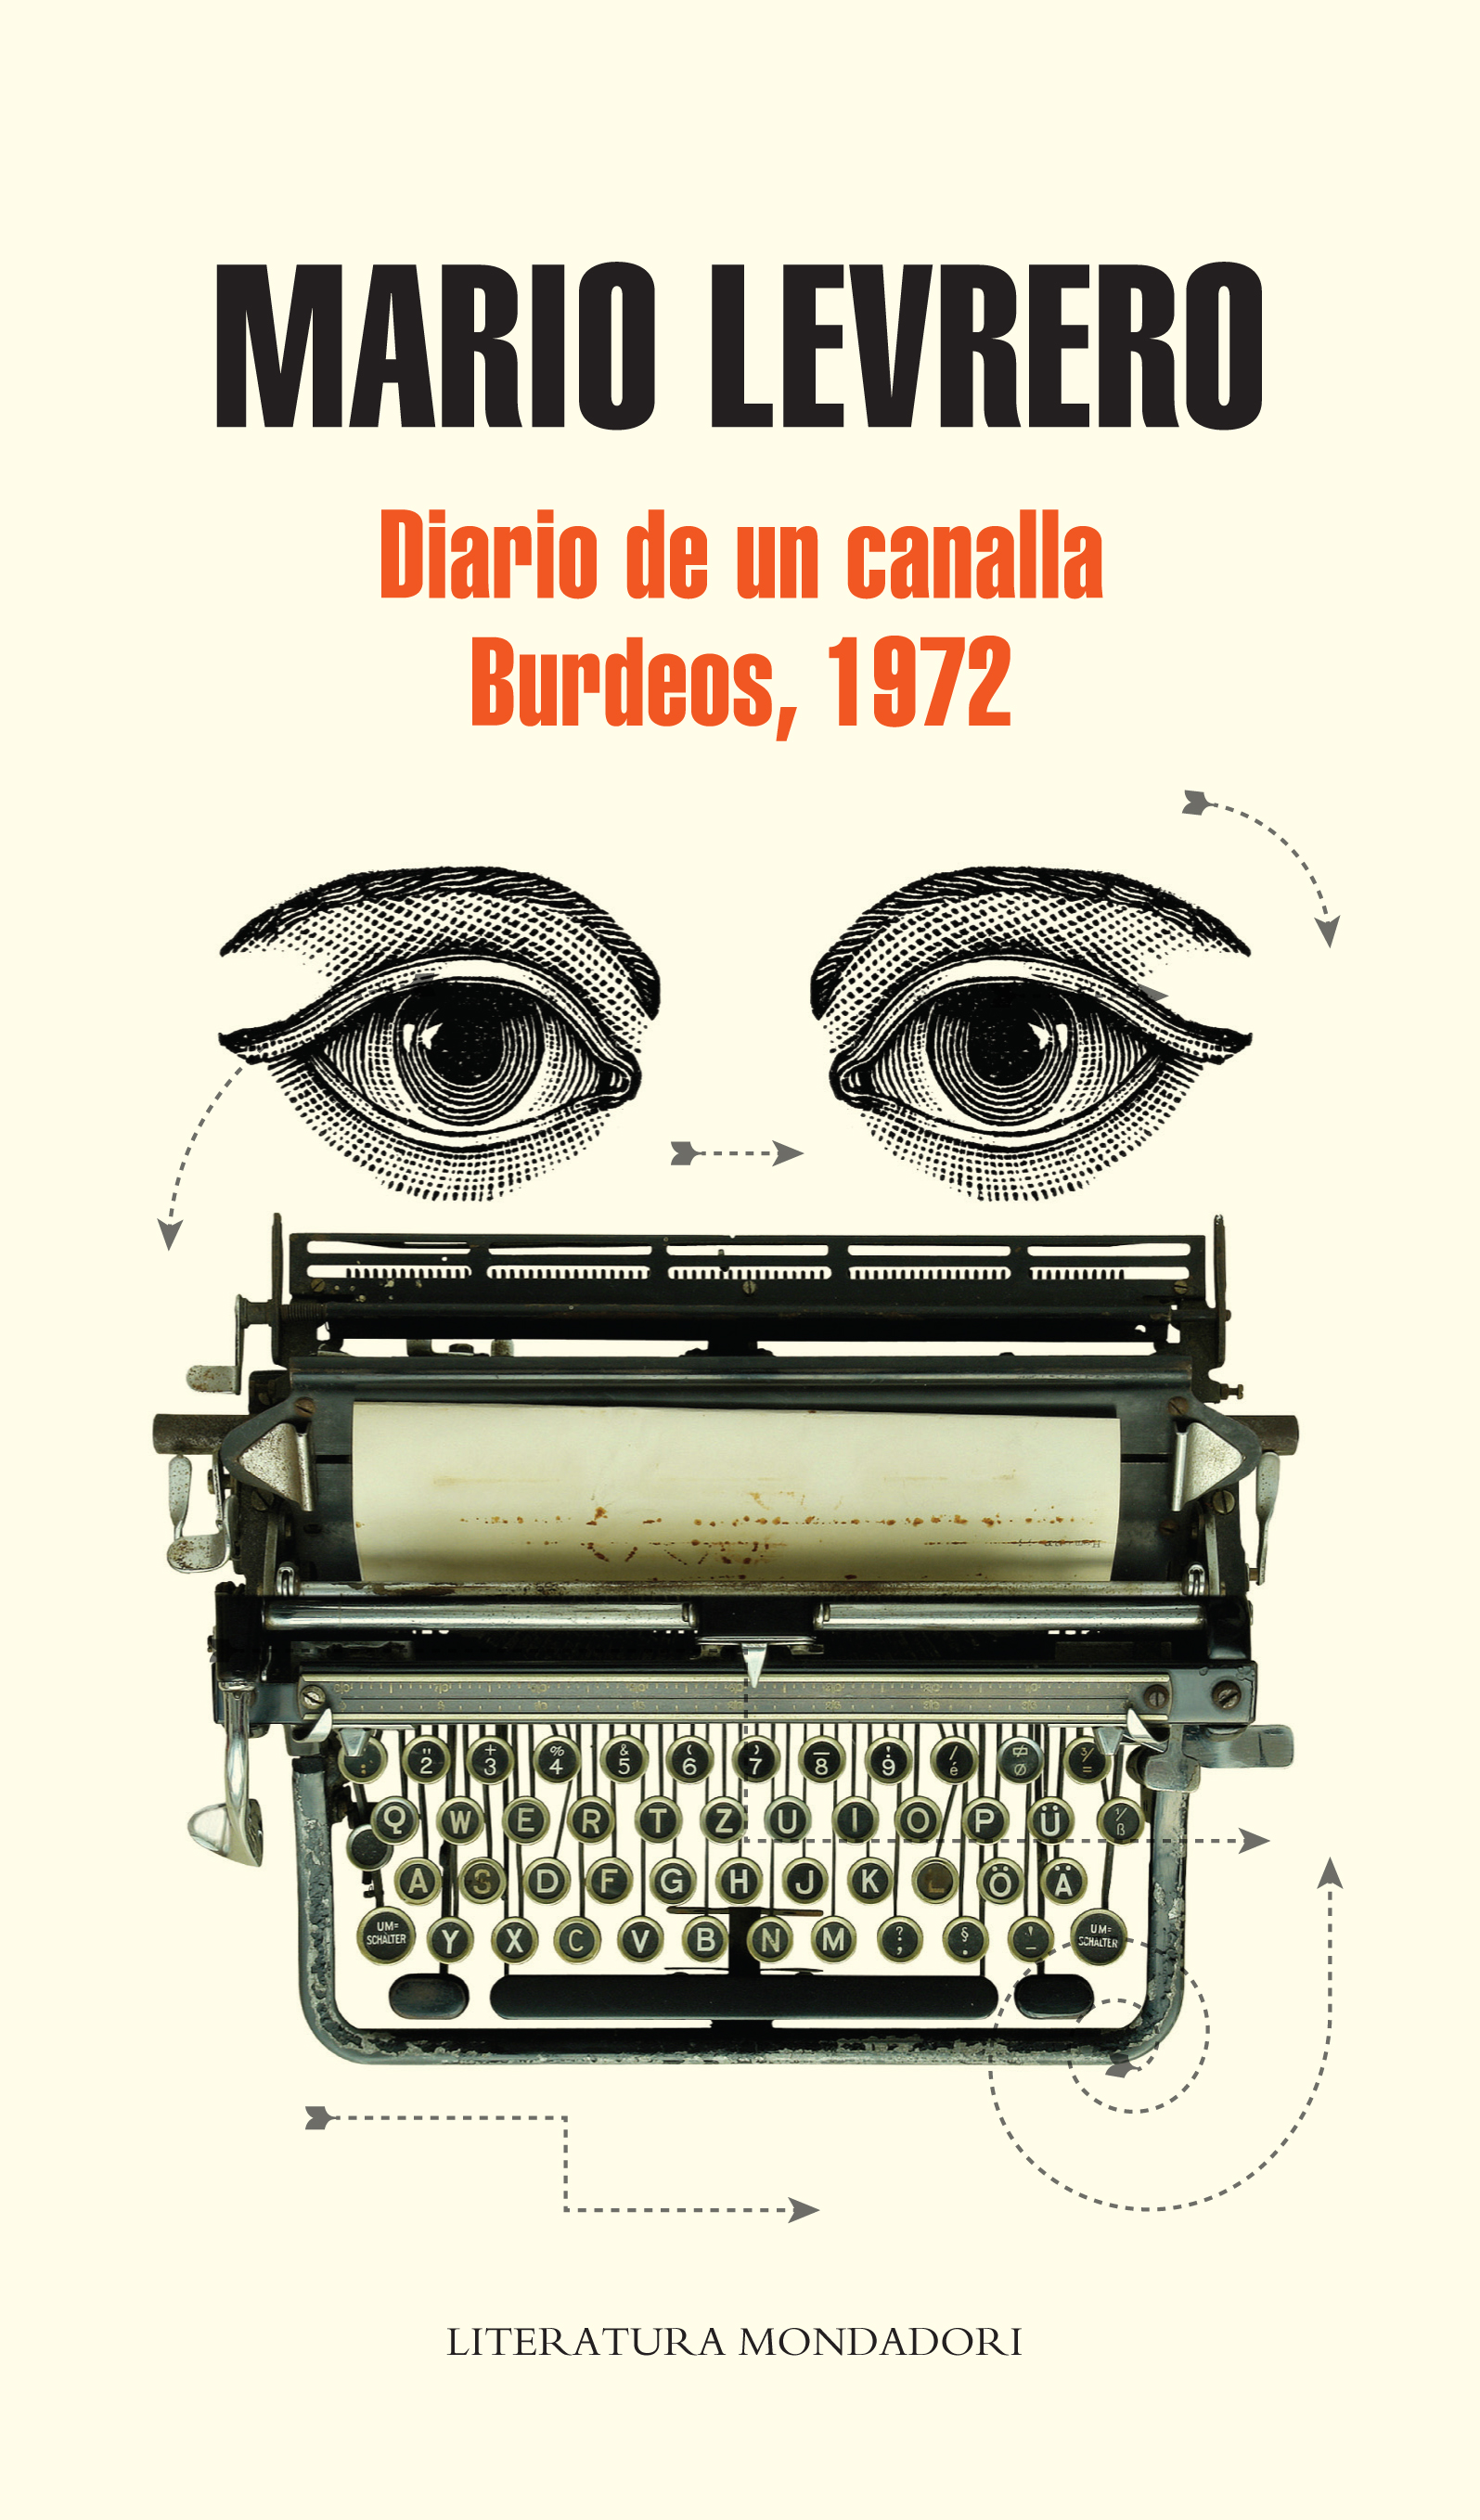 Diario de un canalla y Burdeos, 1972